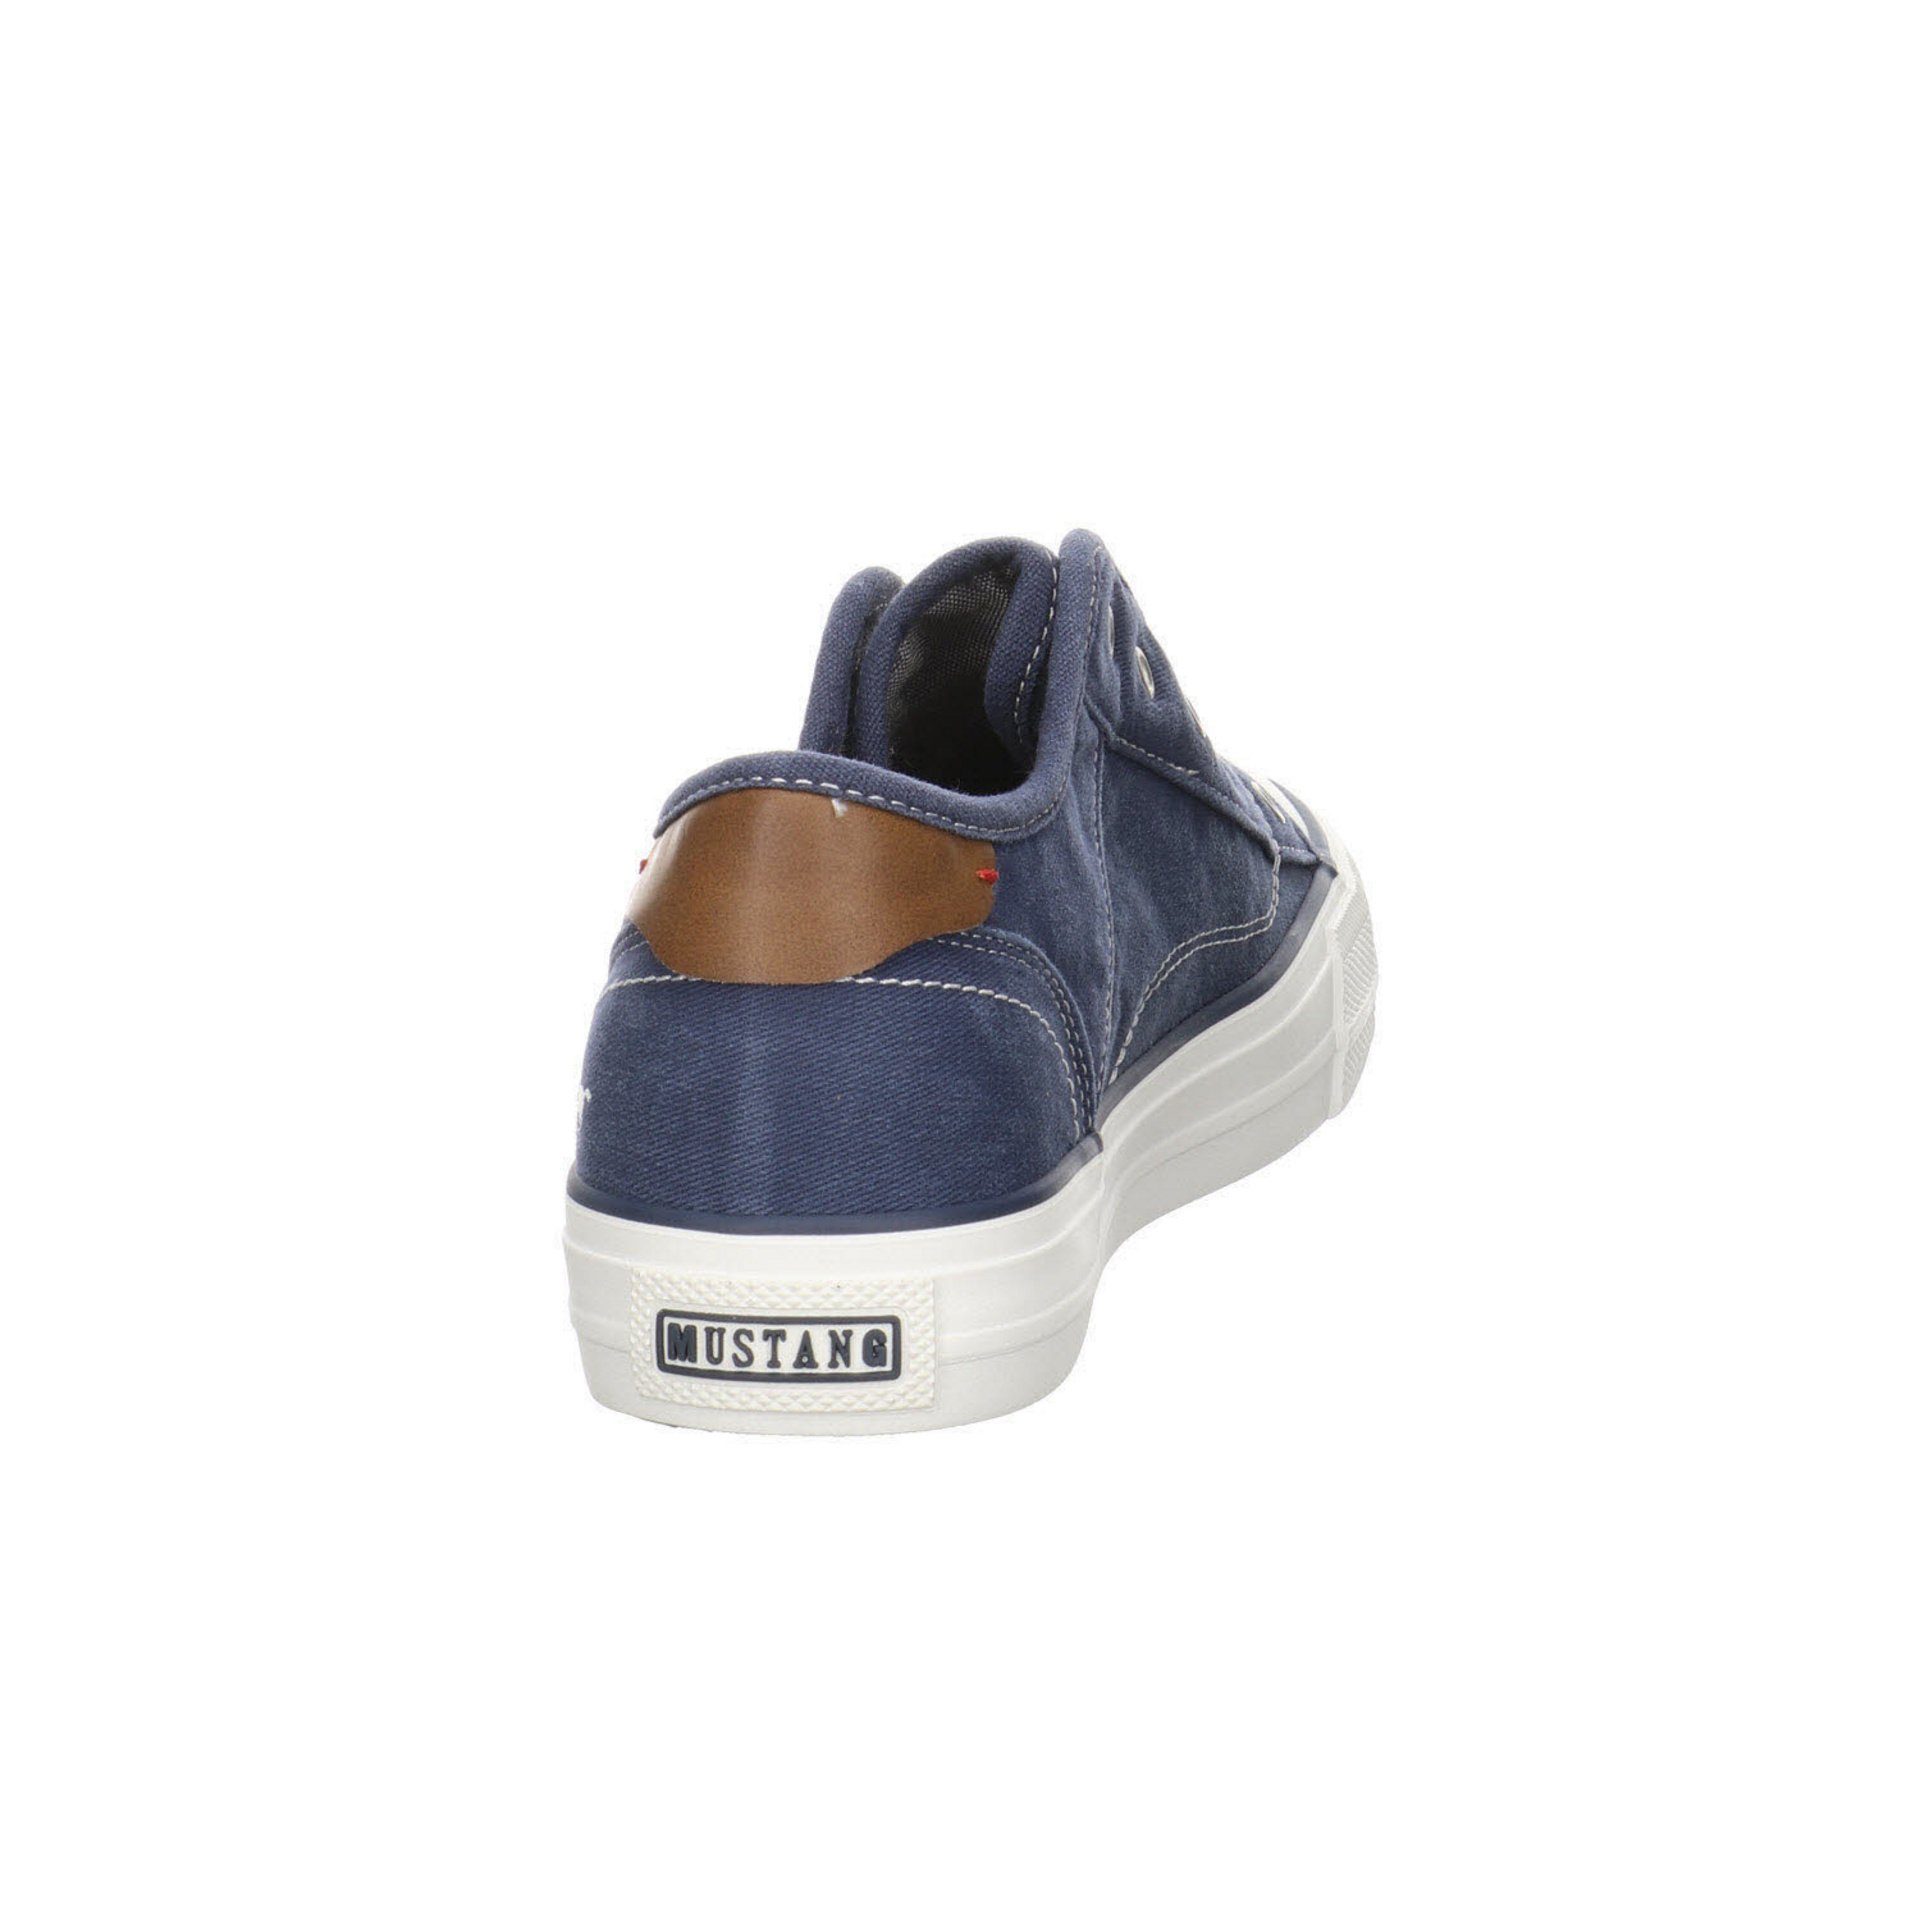 Sneaker Shoes Damen Slipper Textil Schuhe Slip-On Slipper Mustang dunkelblau